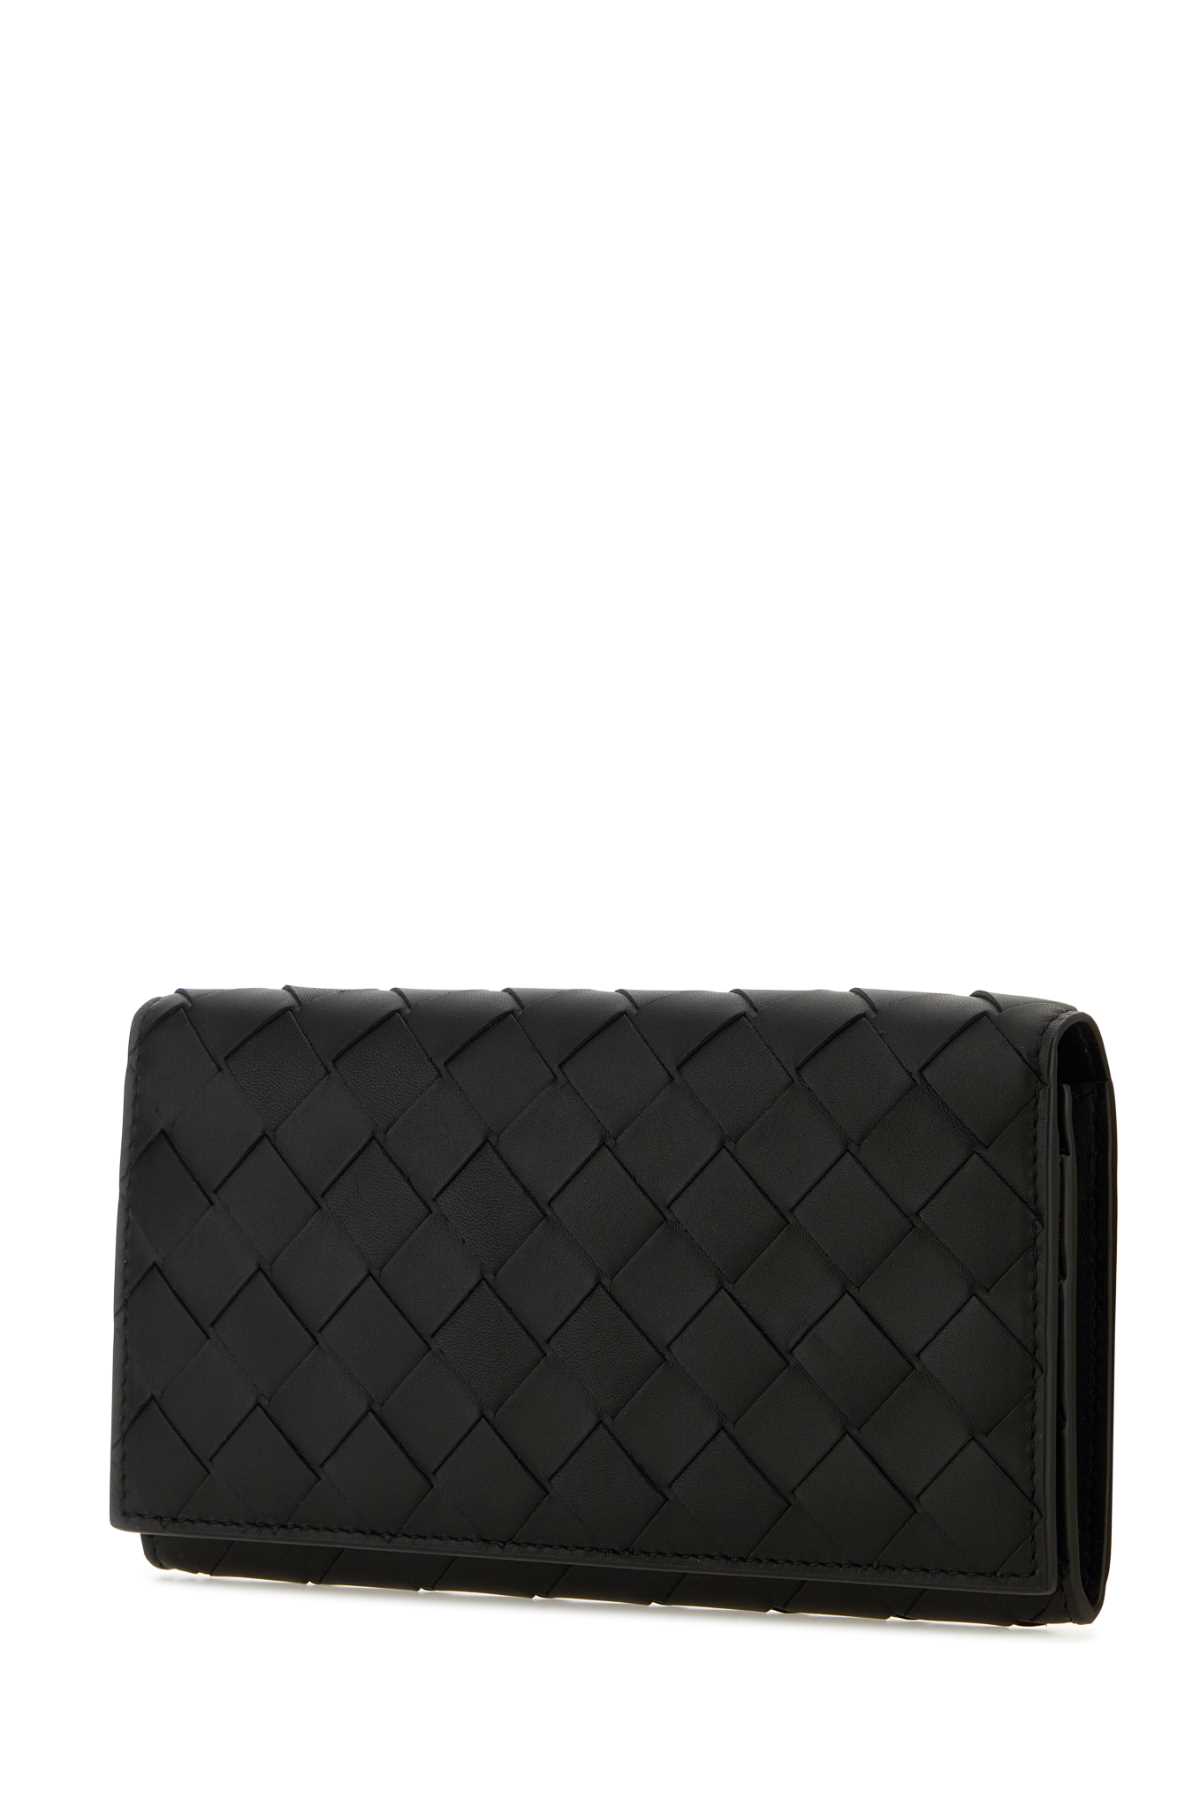 Shop Bottega Veneta Black Leather Wallet In Blacksilver